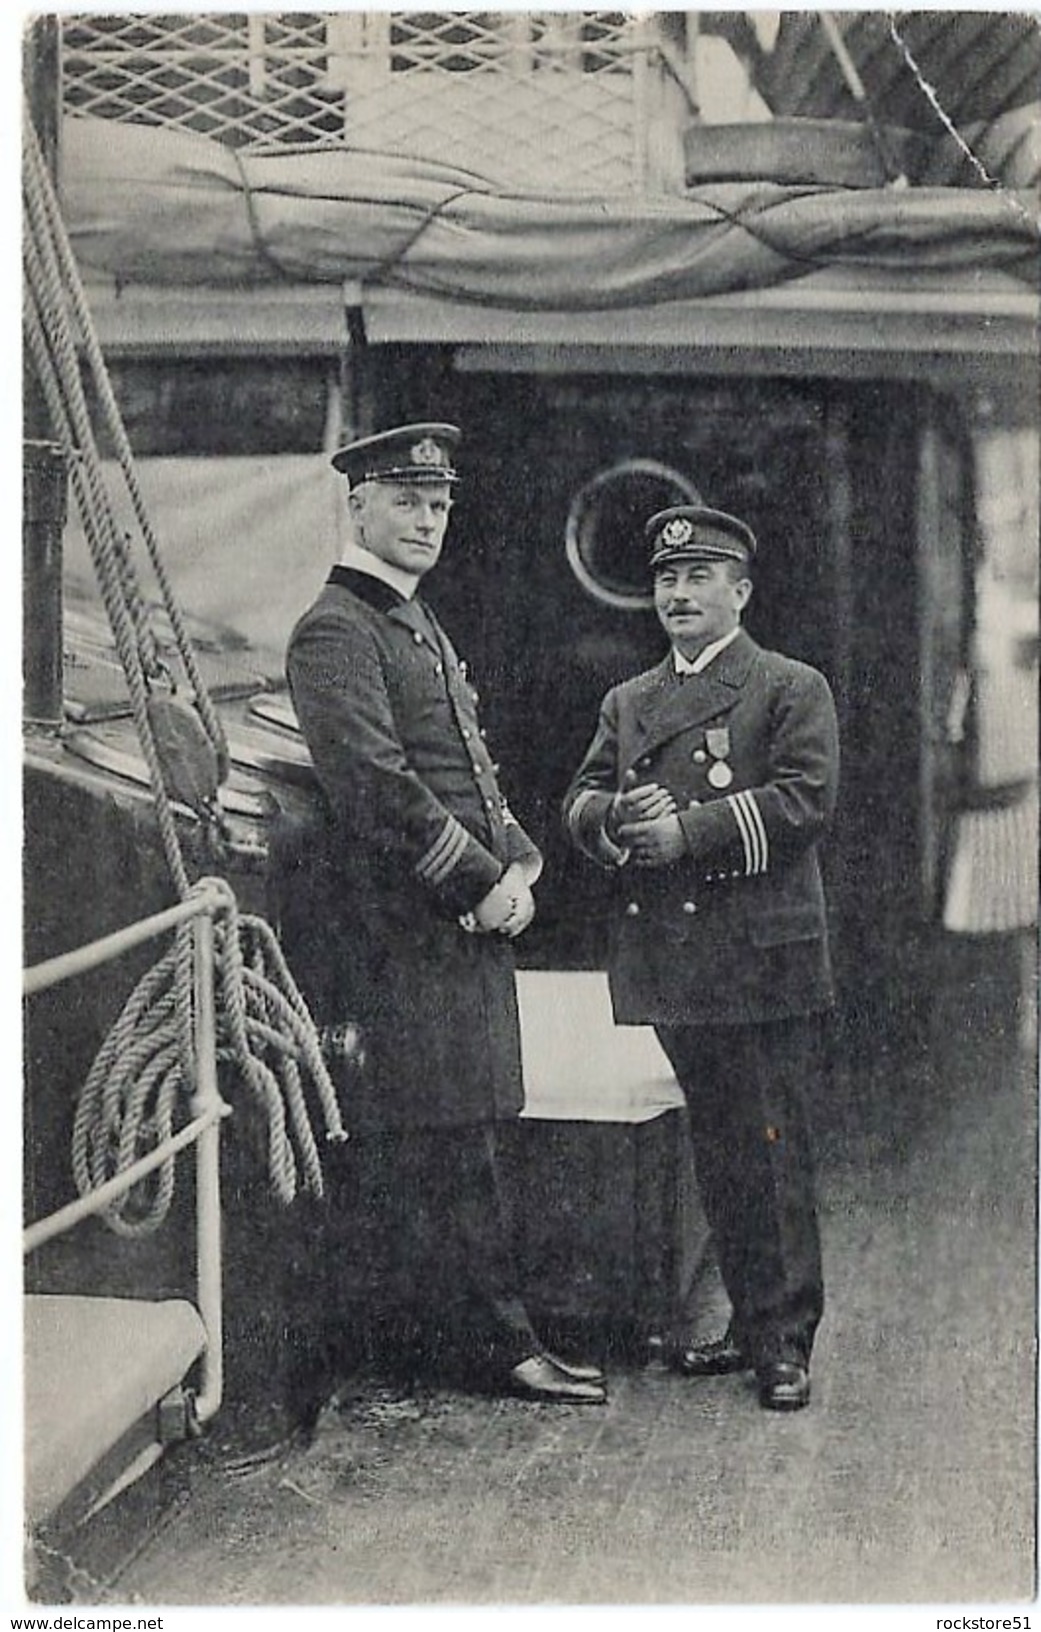 Das Sanitäts-Personal Und Befelhaber Am Dampfer Birger Jarl Rotez Kreuz Red Cross - Guerre 1914-18